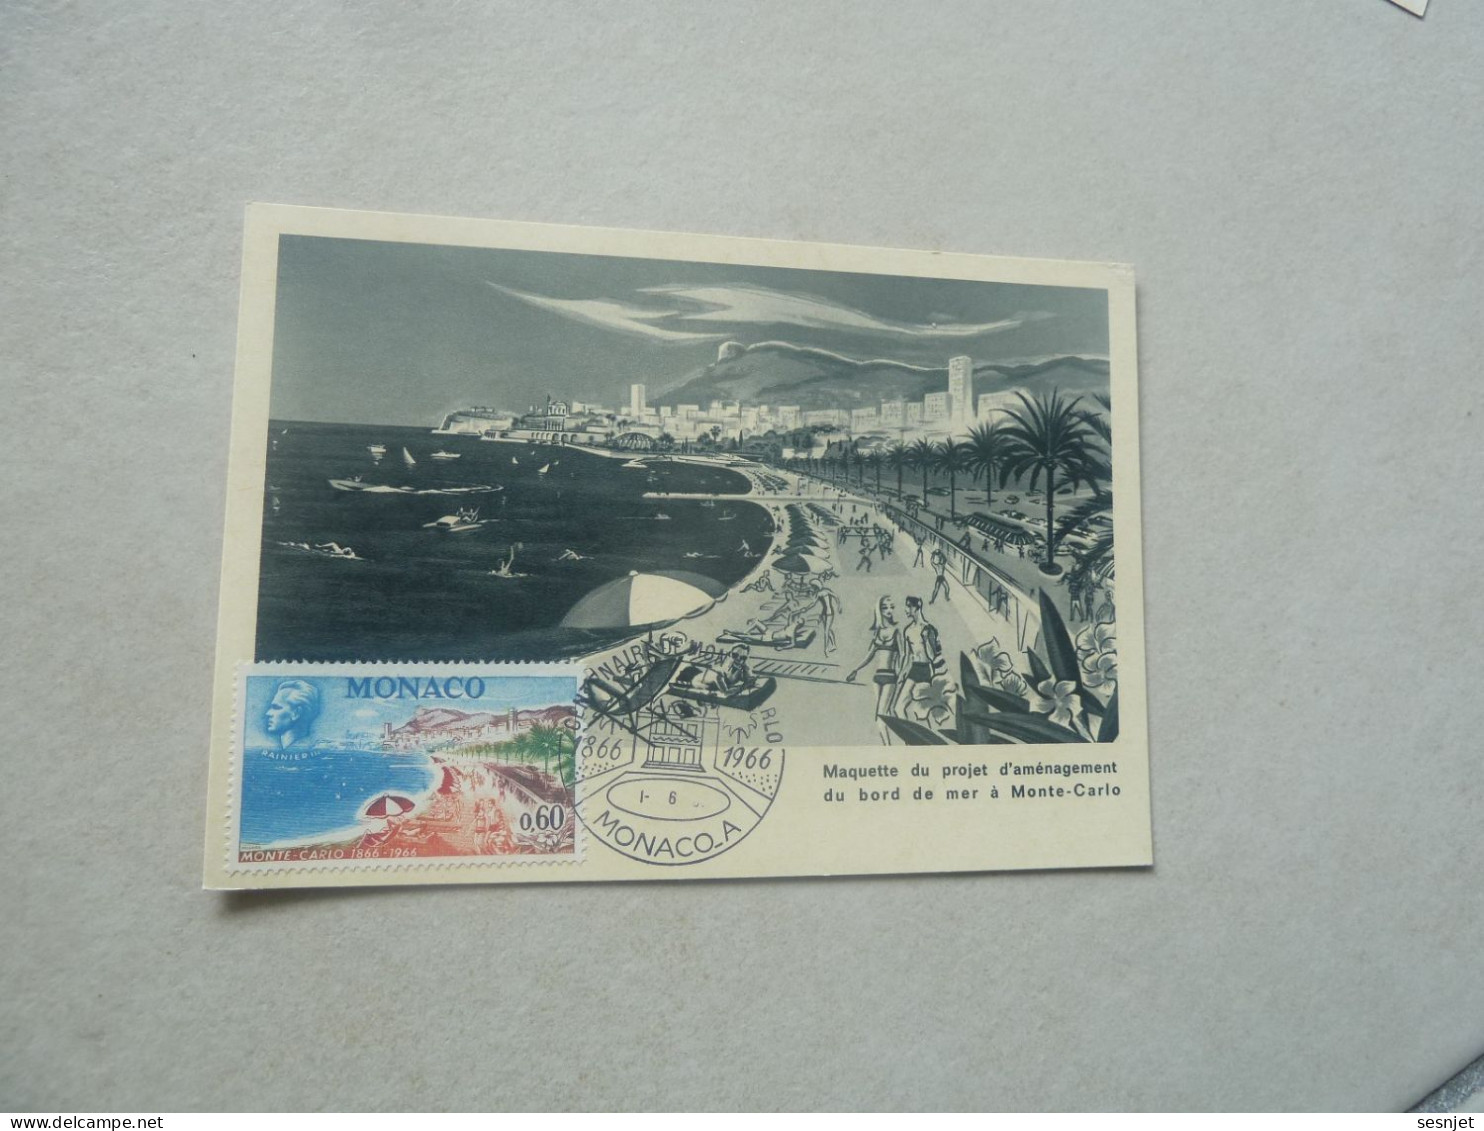 Monaco - Maquette Du Projet D'Aménagement - 0f.60 - Yt 694 - Carte Premier Jour D'Emission - Année 1966 - - Maximum Cards